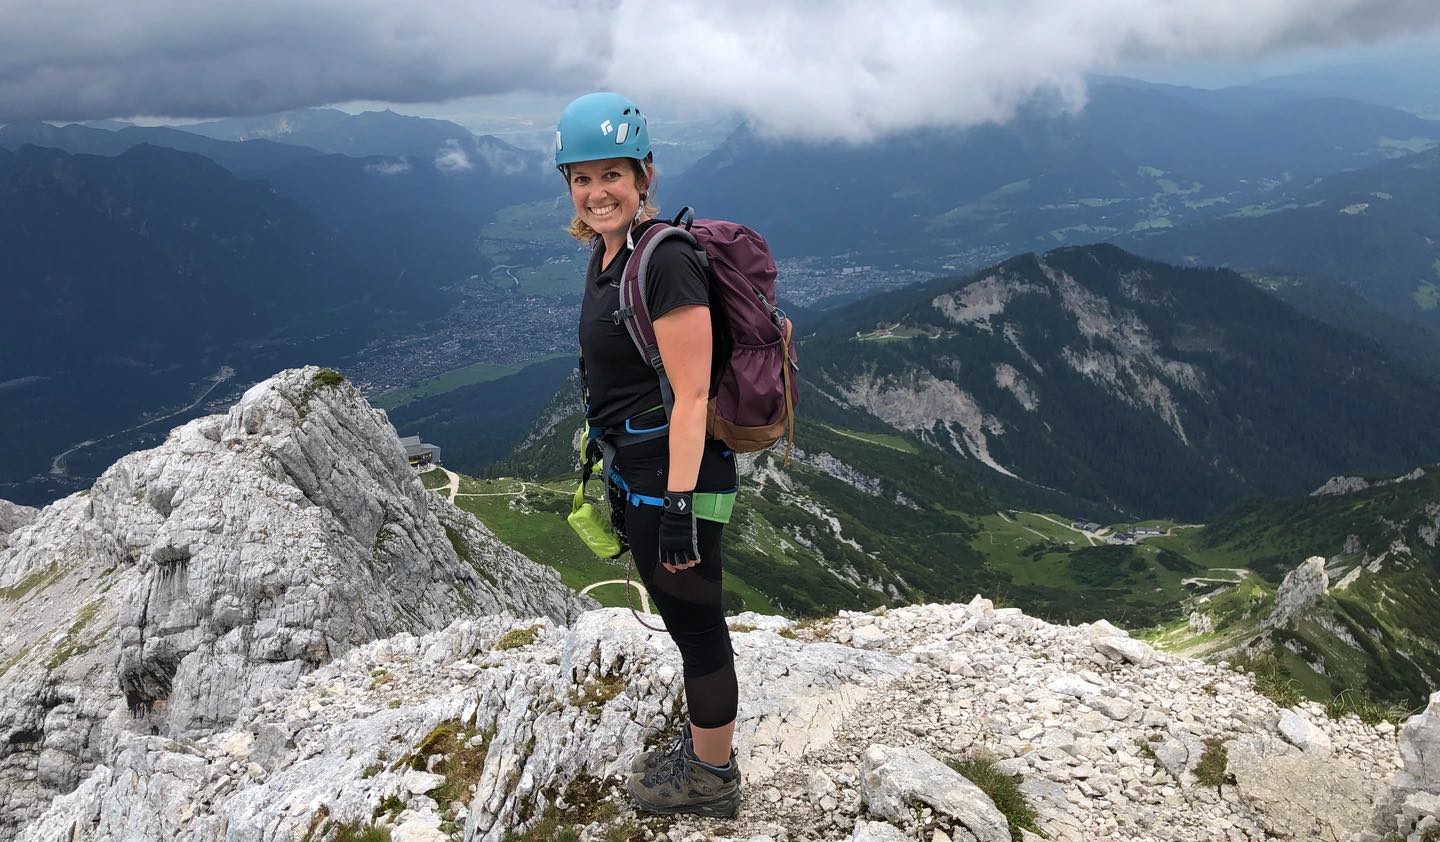 Camping & Klettern: Klettersteige für Anfänger*innen